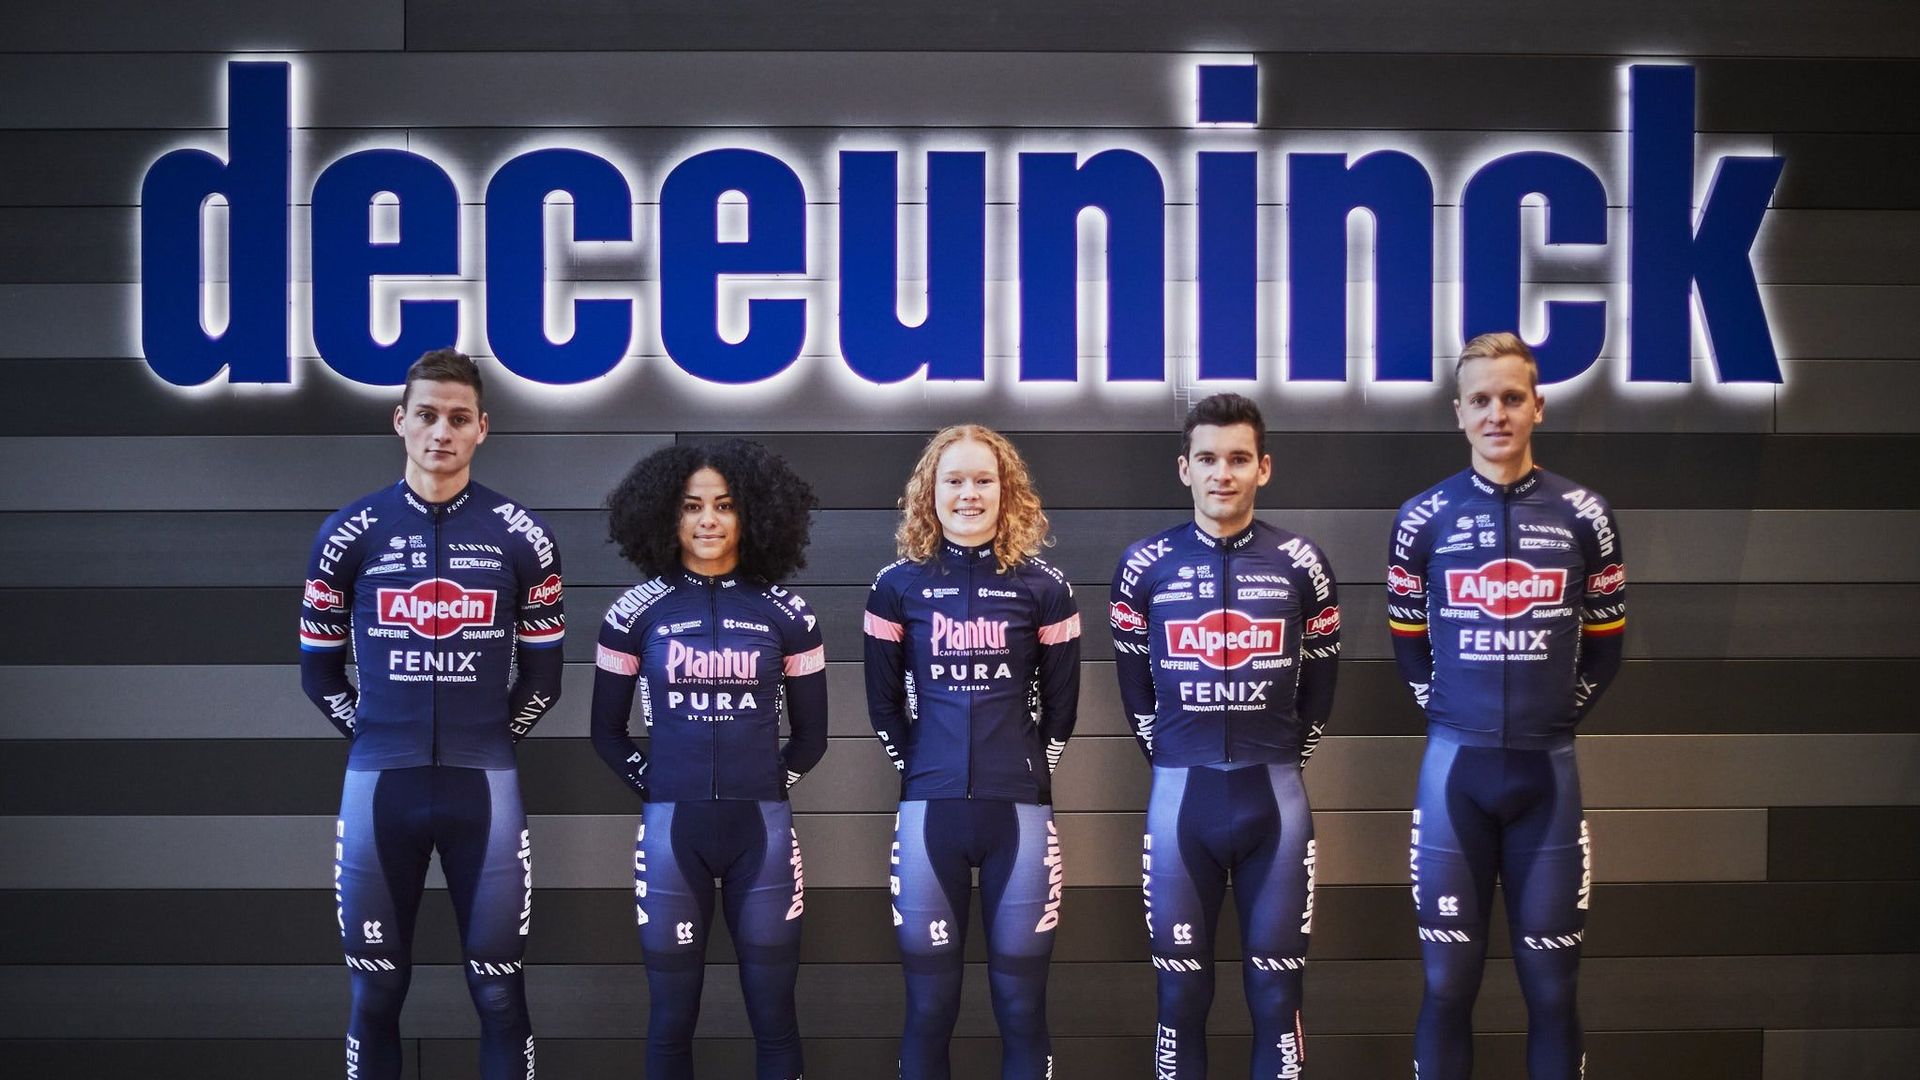 Cyclisme et le mercato des sponsors : Deceuninck passe de Quick-Step à Alpecin